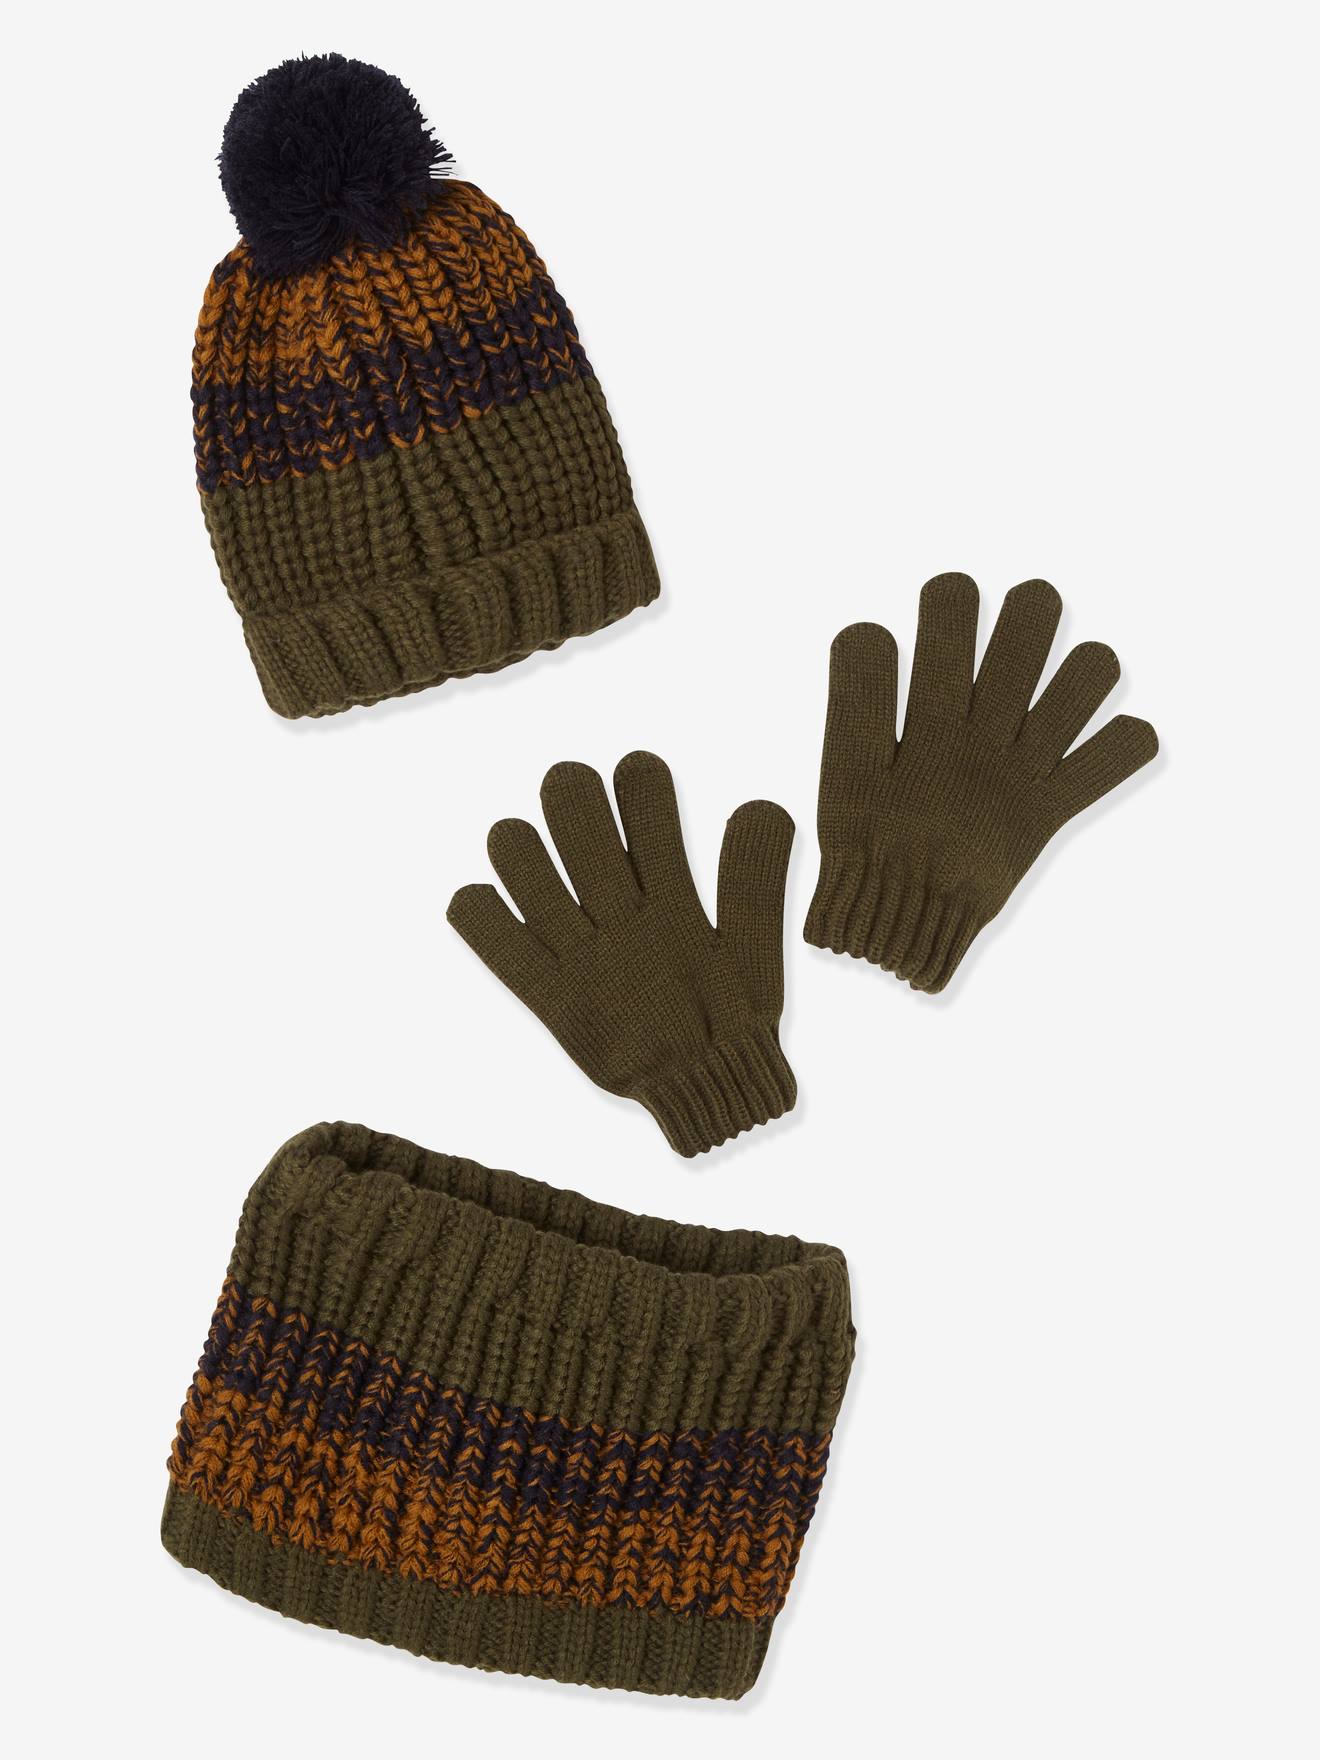 Ensemble bonnet + snood + moufles ou gants garçon en tricot kaki